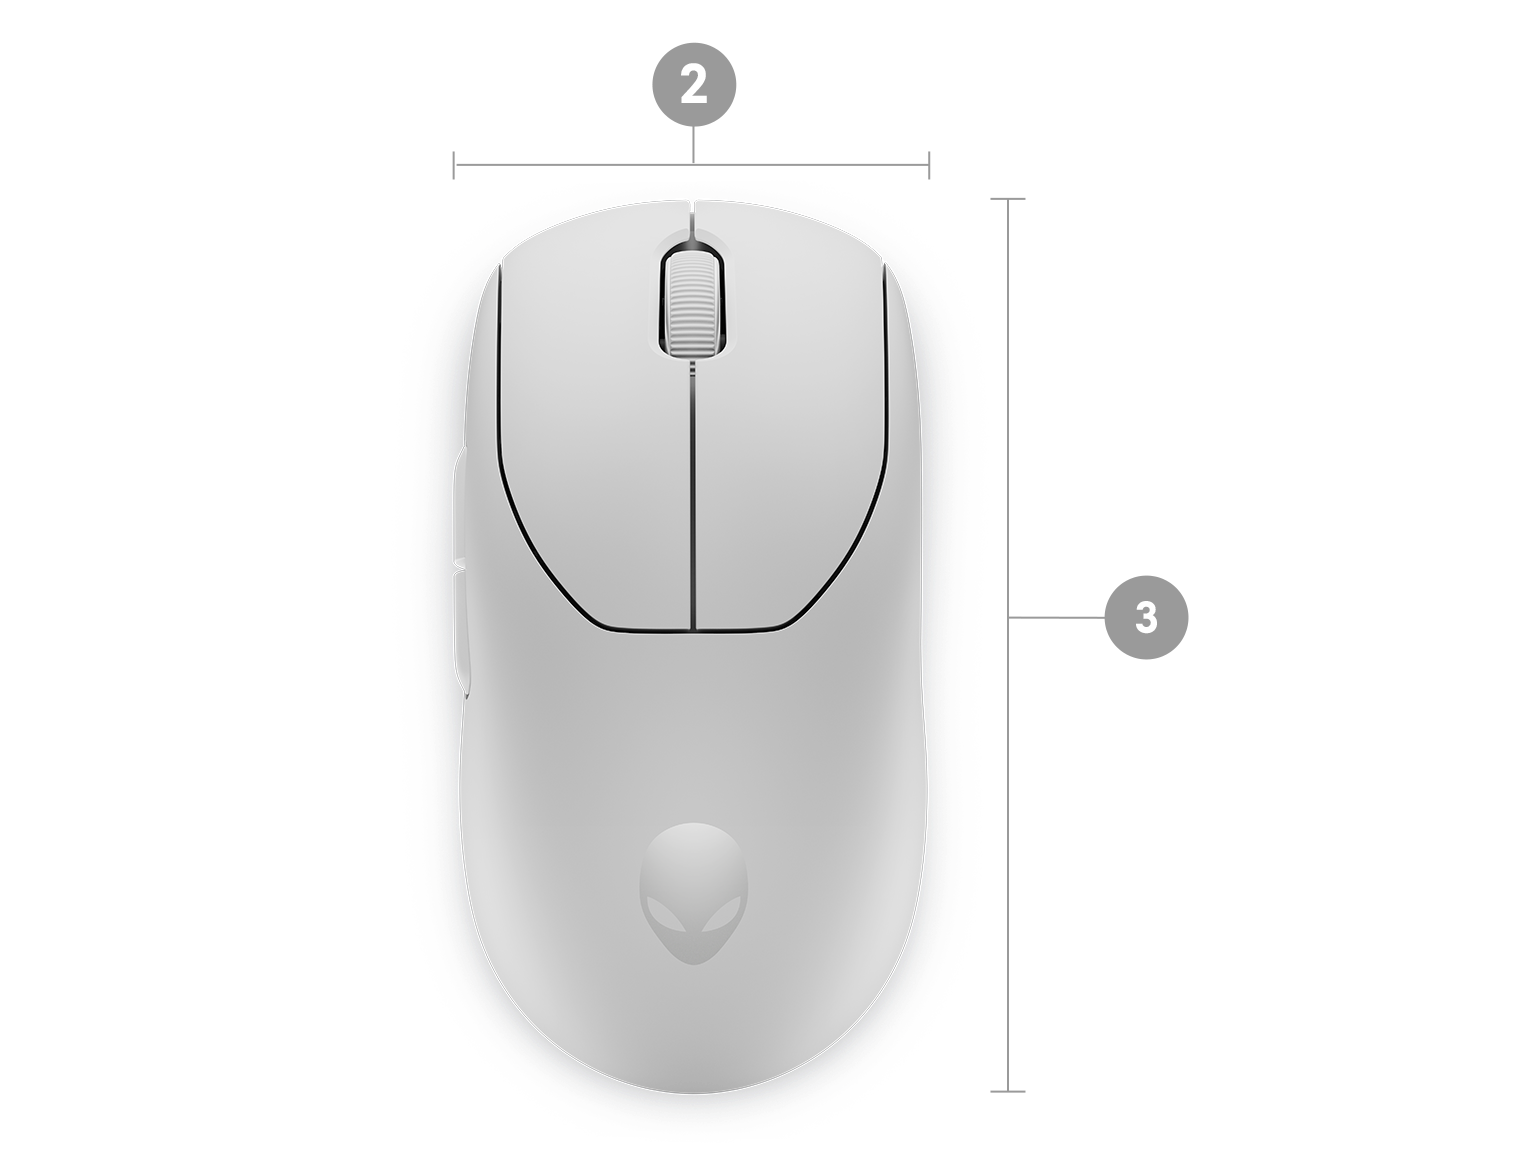 Les périphériques Pro Wireless Mouse et Pro Wireless Keyboard d'Alienware  sont conçus pour l'esport